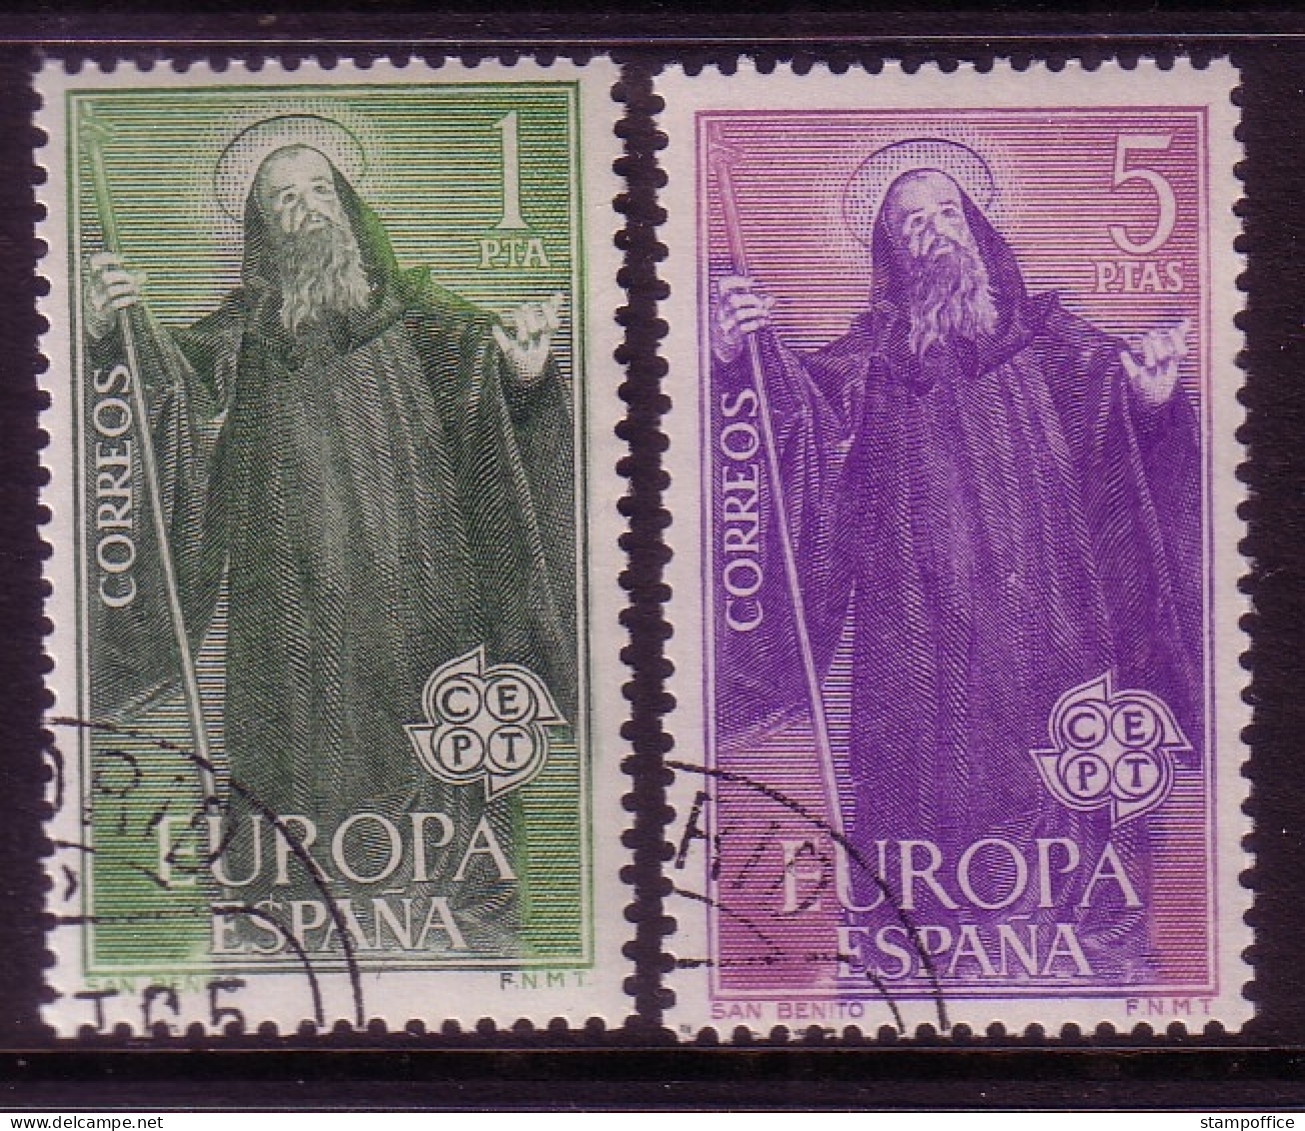 SPANIEN MI-NR. 1565-1566 GESTEMPELT(USED) EUROPA 1965 HL. BENEDIKT - 1965